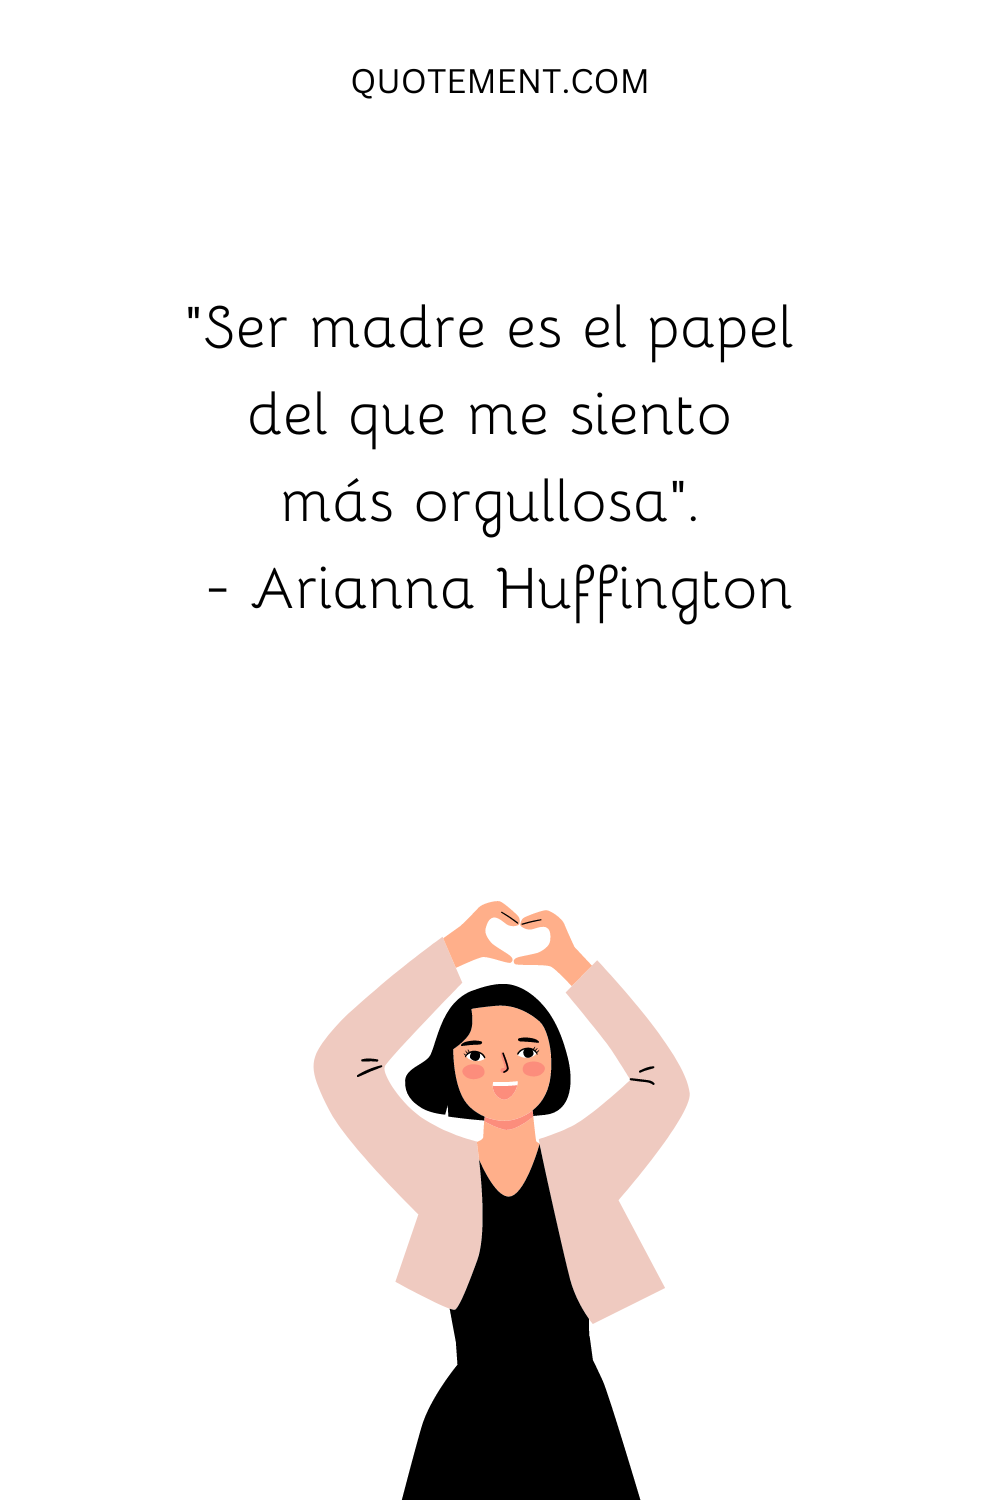 "Ser madre es el papel del que me siento más orgullosa". - Arianna Huffington